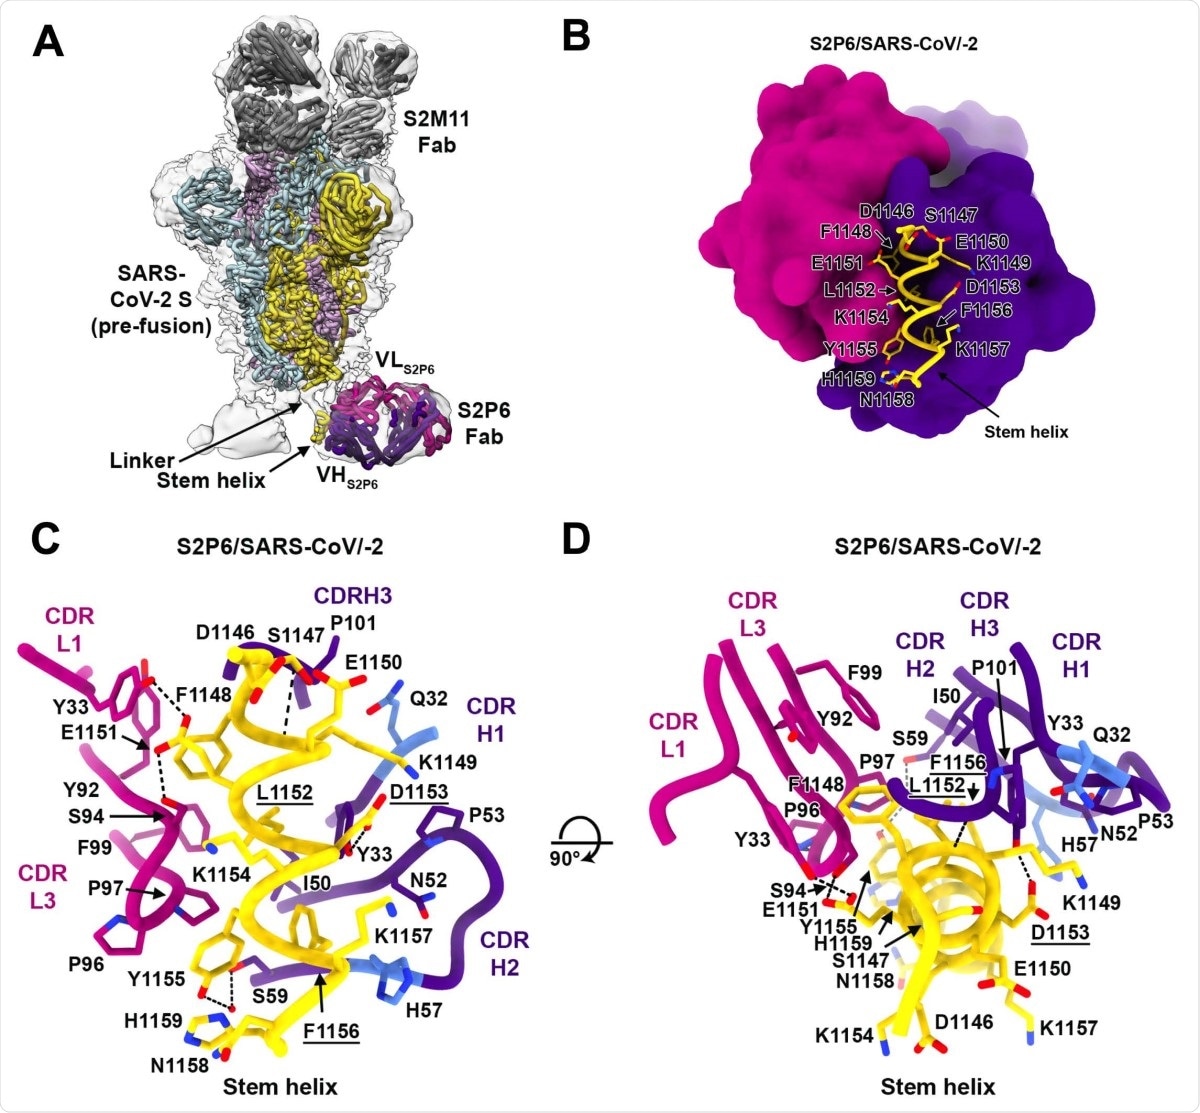 Base estrutural para a reactividade cruzada S2P6 larga com um coronavirus conservado. peptide da hélice da haste. (a) Modelo composto da estrutura do cryoEM de S2P6-bound SARS-CoV-2 S e da estrutura de cristal do peptide da hélice da haste de S2P6-bound entrada no mapa do cryoEM (superfície transparente do cinza). Os protomers de SARS-CoV-2 S são coloridos cor-de-rosa, ciano e o ouro, as correntes pesadas S2P6 e claras fabulosos são roxo colorido e a magenta e as correntes pesadas S2M11 e claras fabulosos são coloridas escuras e claras - cinza, respectivamente. (b) Diagrama da fita do S2P6 fabuloso (rendição de superfície) no complexo com o peptide da hélice da haste de SARS-CoV-2 S (fita amarela com as correntes laterais rendidas como varas e etiquetadas). Diagrama da fita (do CD) em duas orientações ortogonais do limite S2P6 fabuloso ao peptide da hélice da haste de SARS-CoV-2 S que mostra uma rede conservada das interacções. Somente os resíduos chaves da relação e os laços dos CDR S2P6 são mostrados para maior clareza. Os resíduos Q32 e H57, de que são transformados durante a maturação da afinidade da corrente S2P6 pesada, são coloridos azul. As ligações de hidrogênio são indicadas com as linhas tracejadas. Os resíduos substituídos nos mutantes do escape isolados são sublinhados.